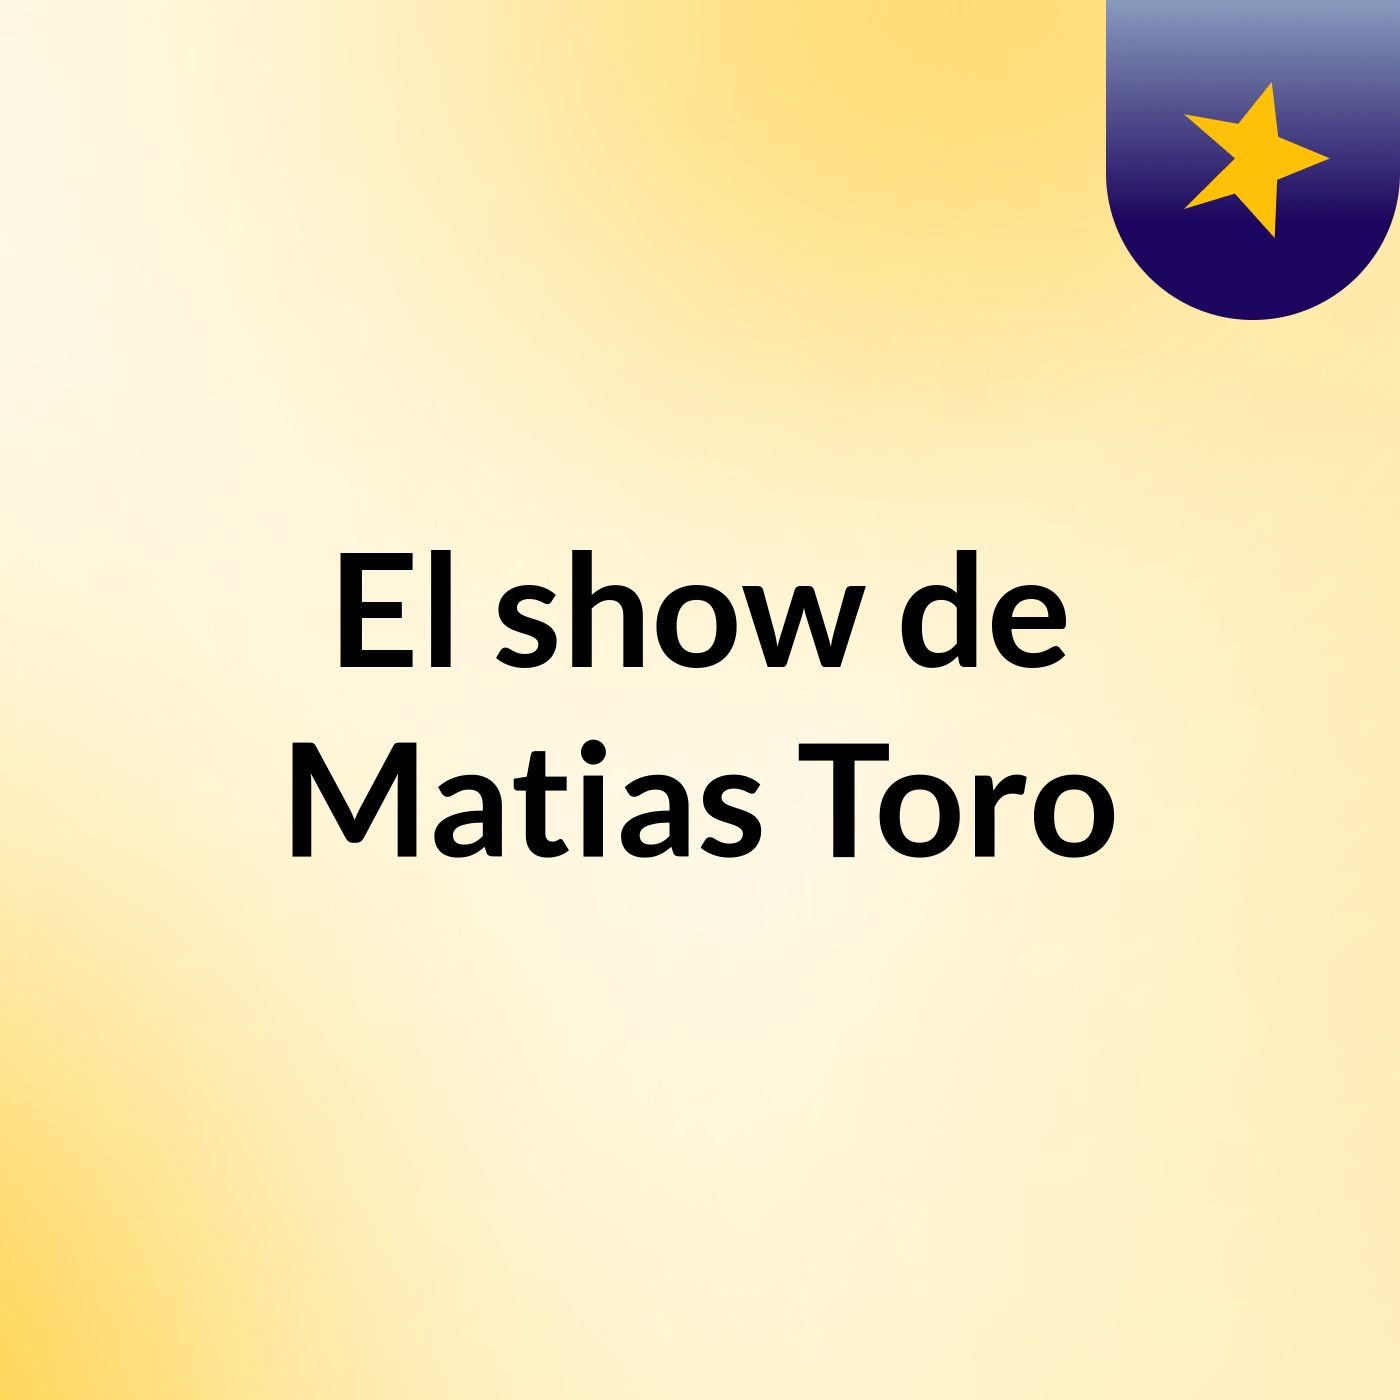 El show de Matias Toro